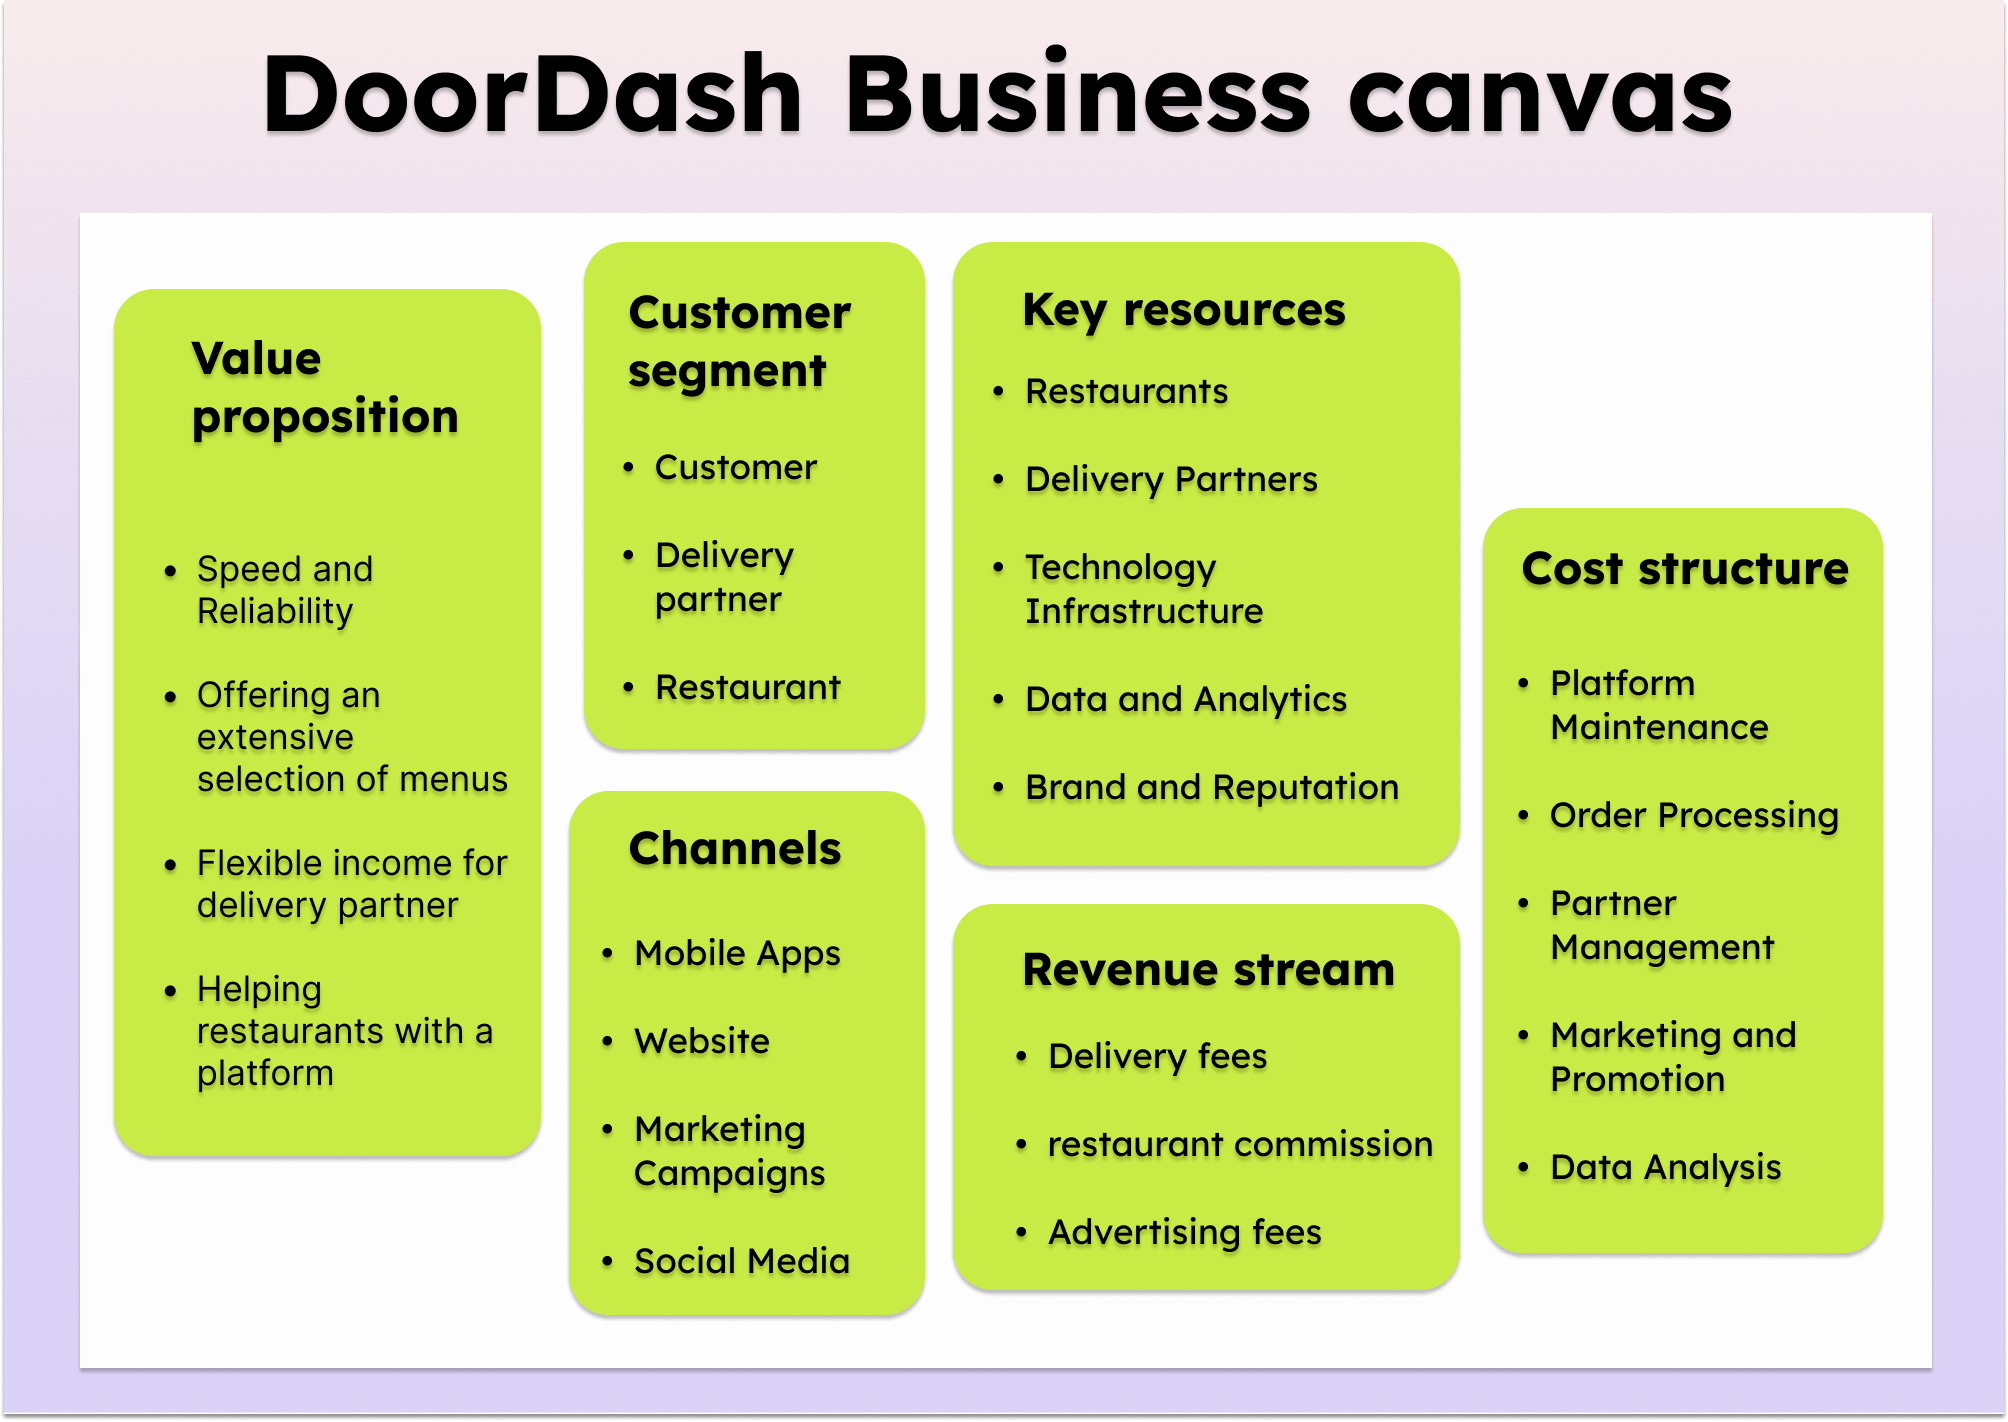 DoorDash Business Model